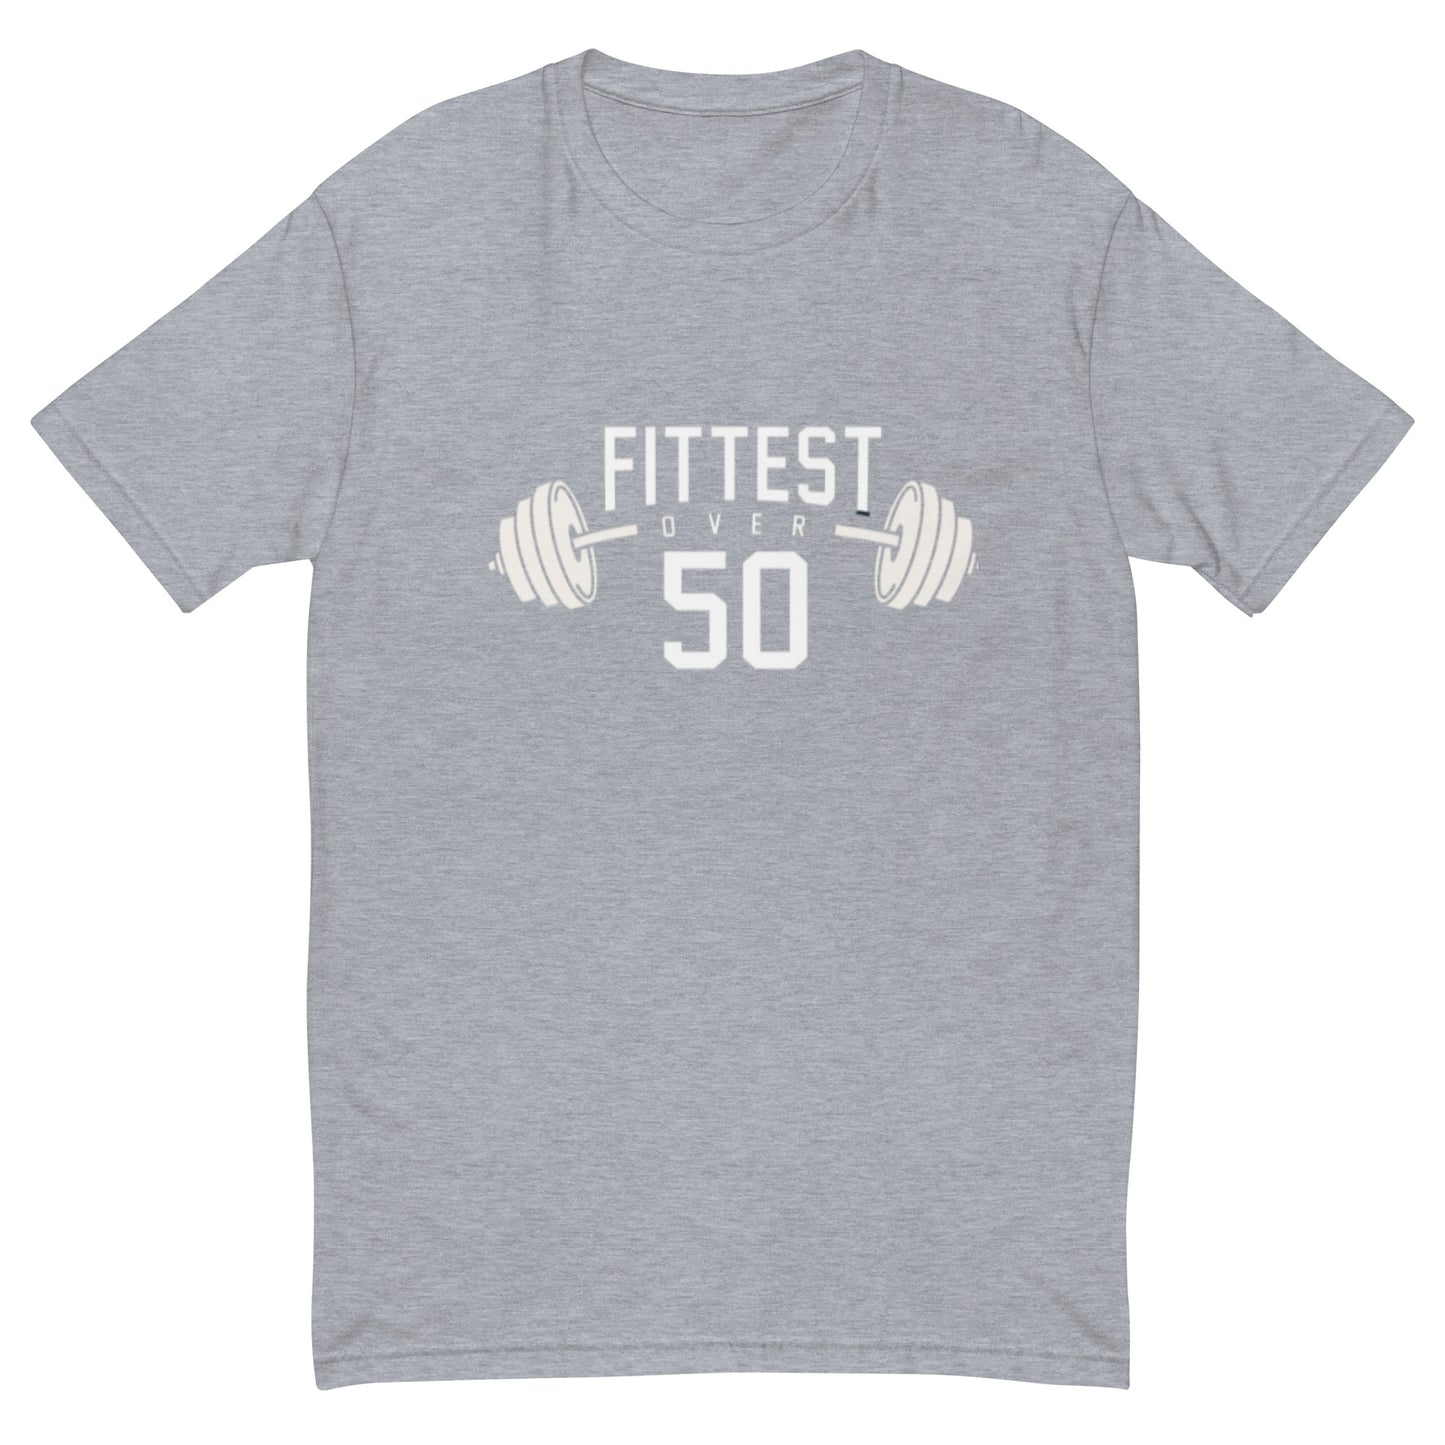 Fittest Over 50 Men's Short Sleeve T-shirt